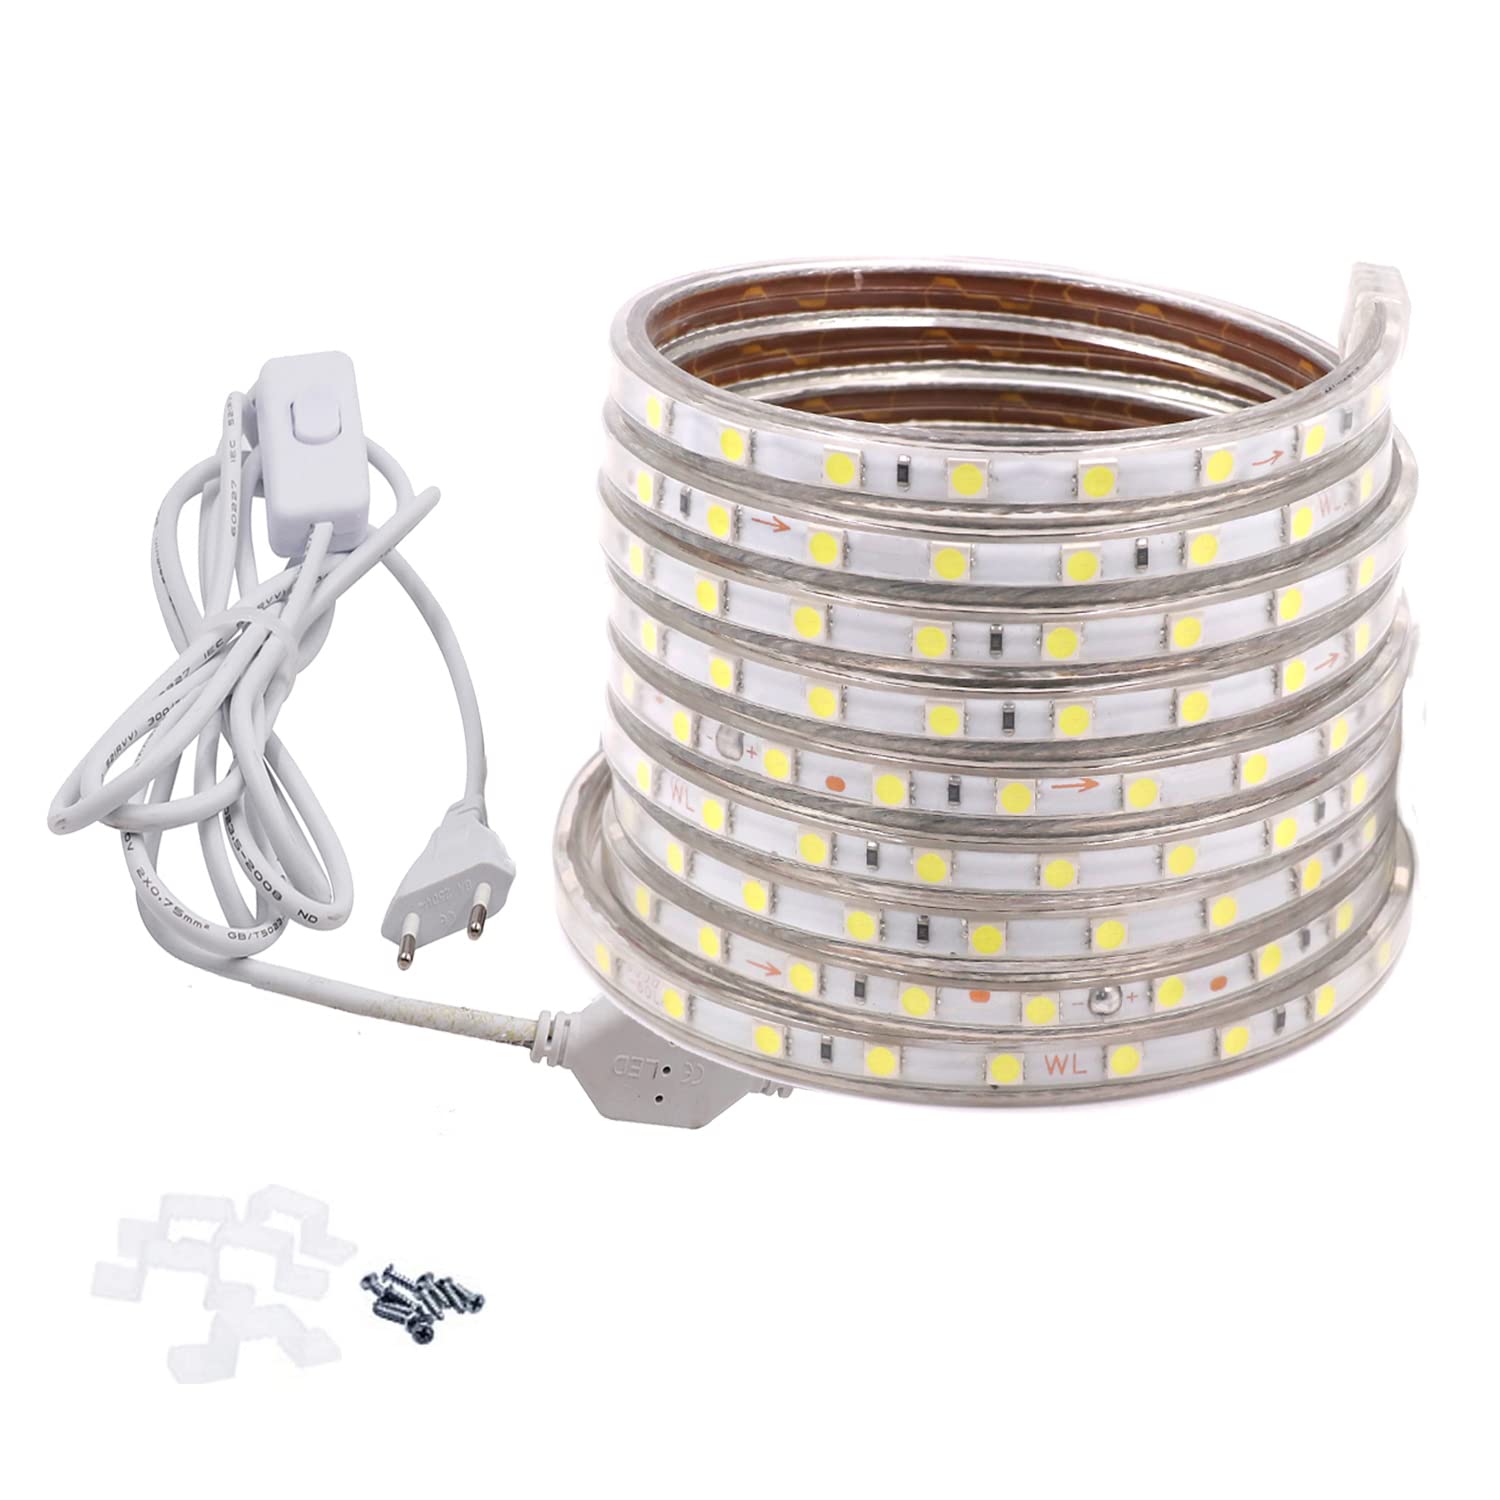 FOLGEMIR 10m Kalt Weiß LED Band mit Schalter, 220V 230V Lichtleiste, 60 Leds/m Strip, IP65 Lichtschlauch, milde Hintergrundbeleuchtung